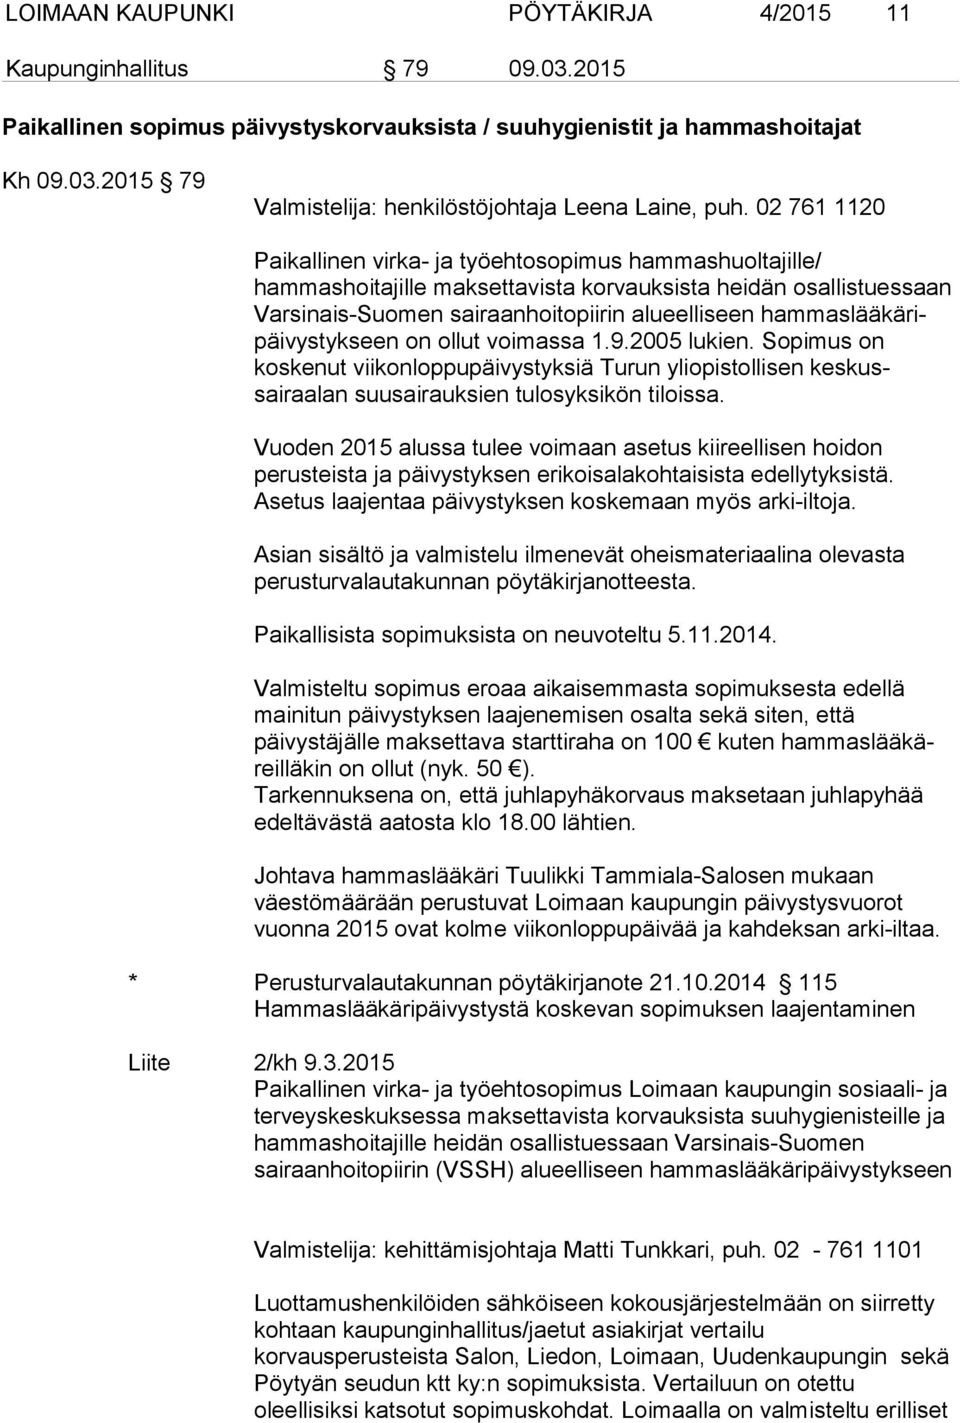 hammaslääkäripäivystykseen on ollut voimassa 1.9.2005 lukien. Sopimus on koskenut viikonloppupäivystyksiä Turun yliopistollisen keskussairaalan suusairauksien tulosyksikön tiloissa.